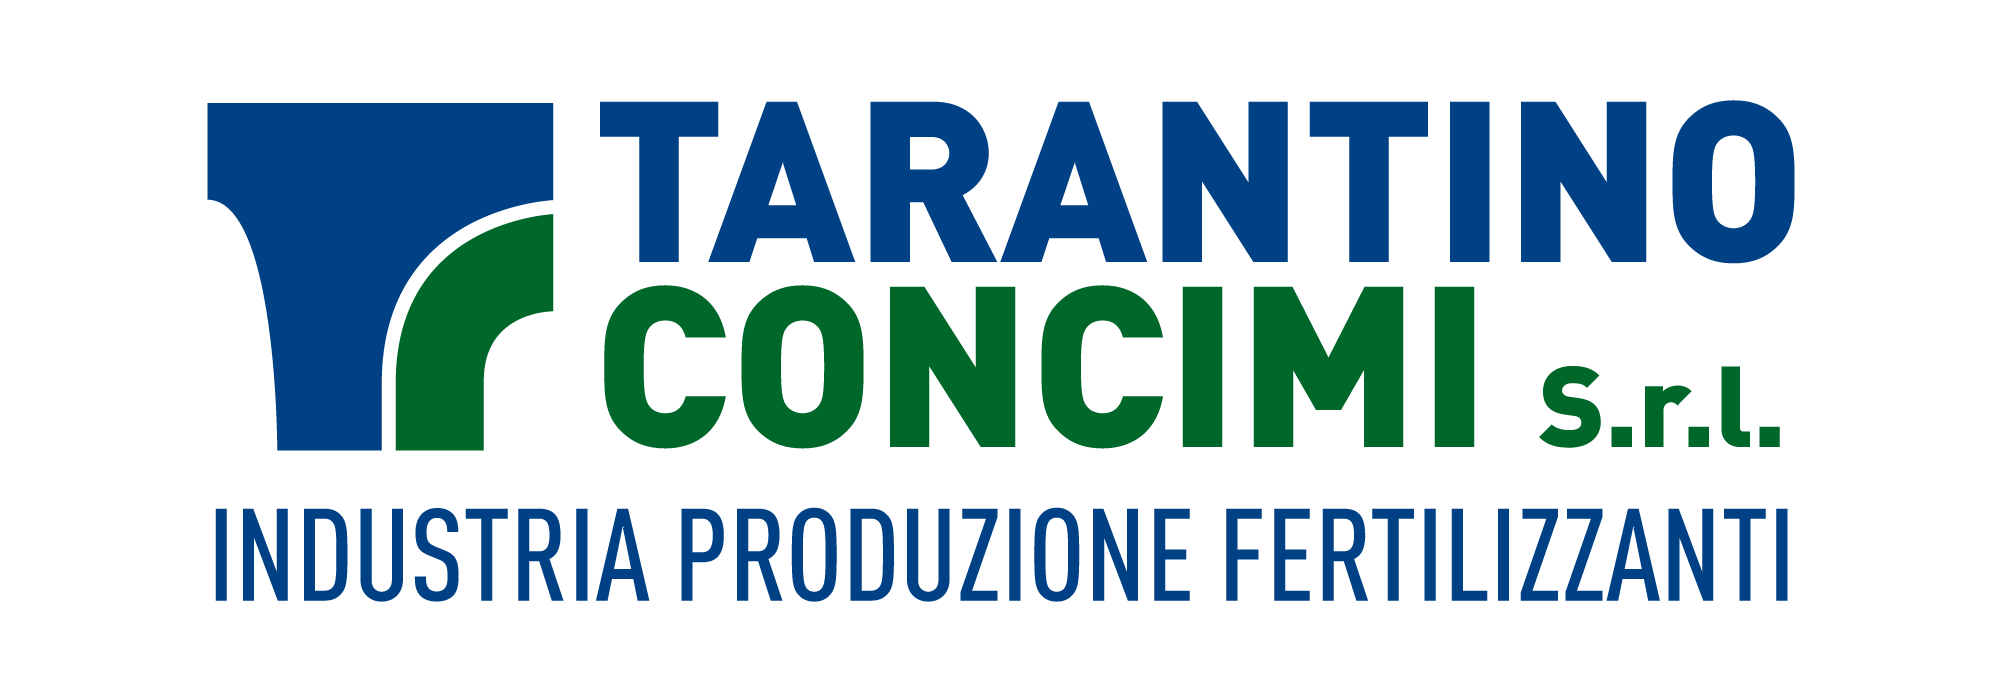 Tarantino Concimi Srl - Industria di Produzione di Fertilizzanti e Concimi - Maglie (LE)